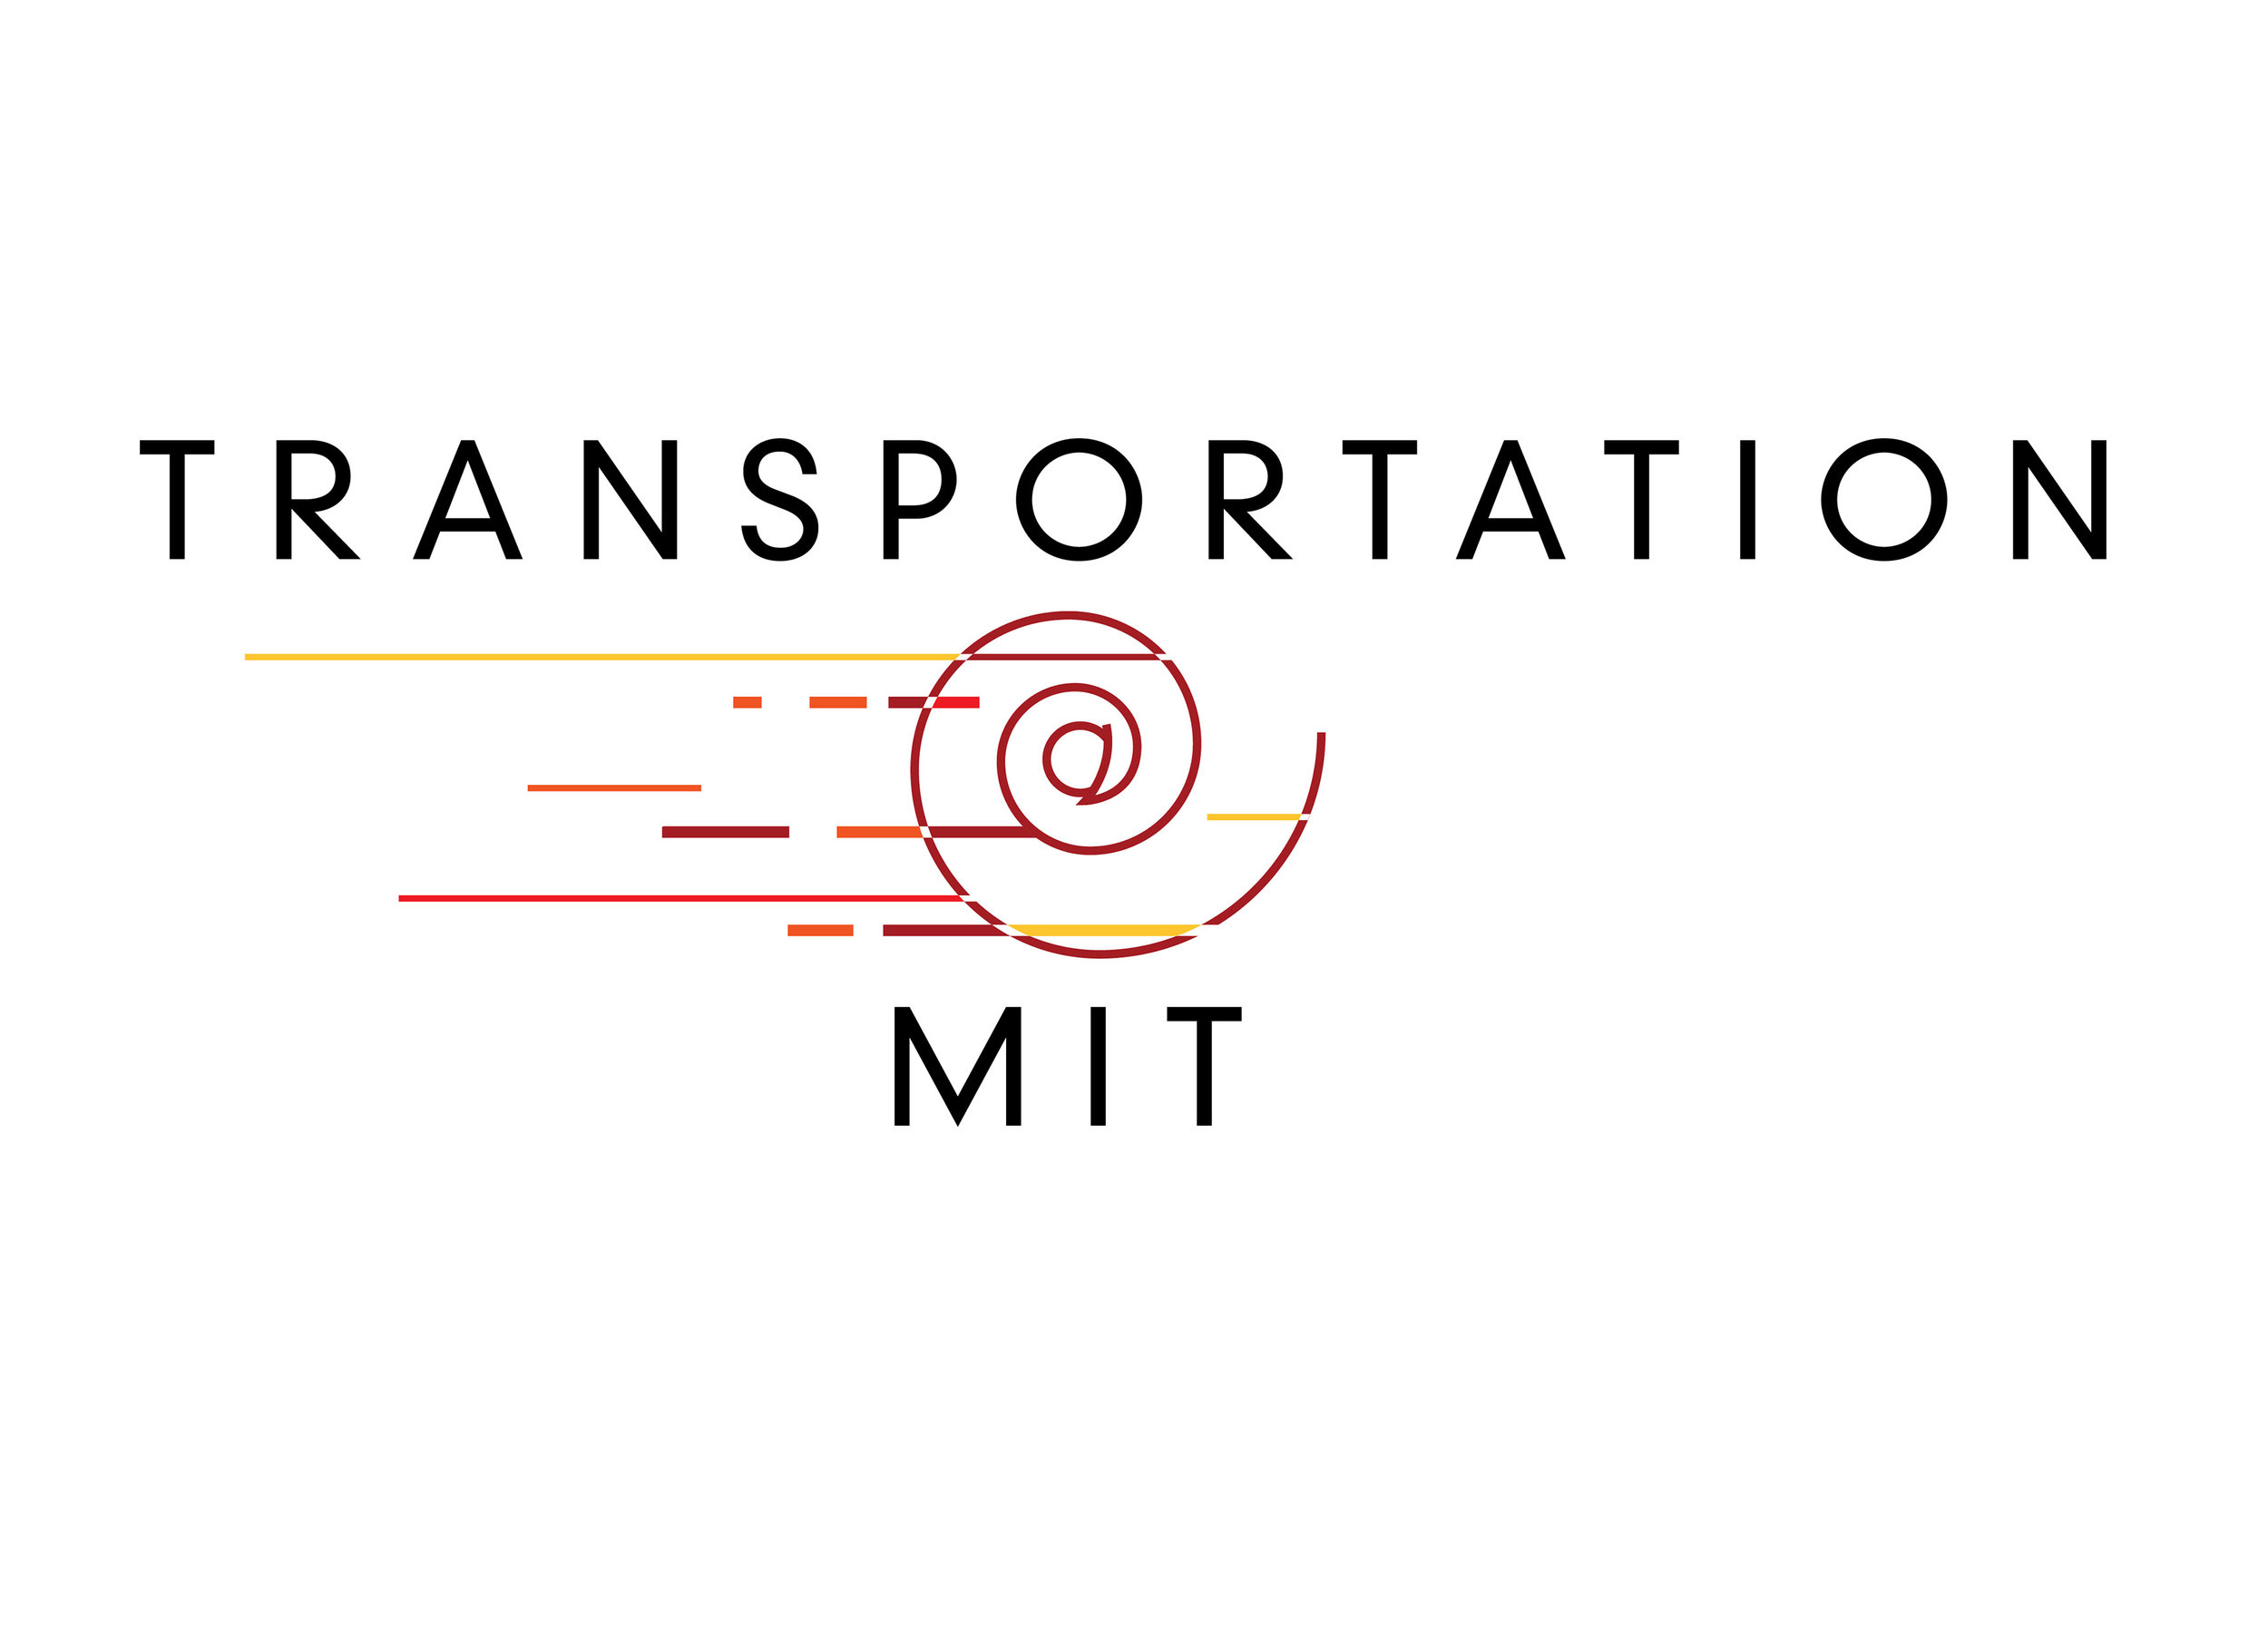 Transportation at MIT